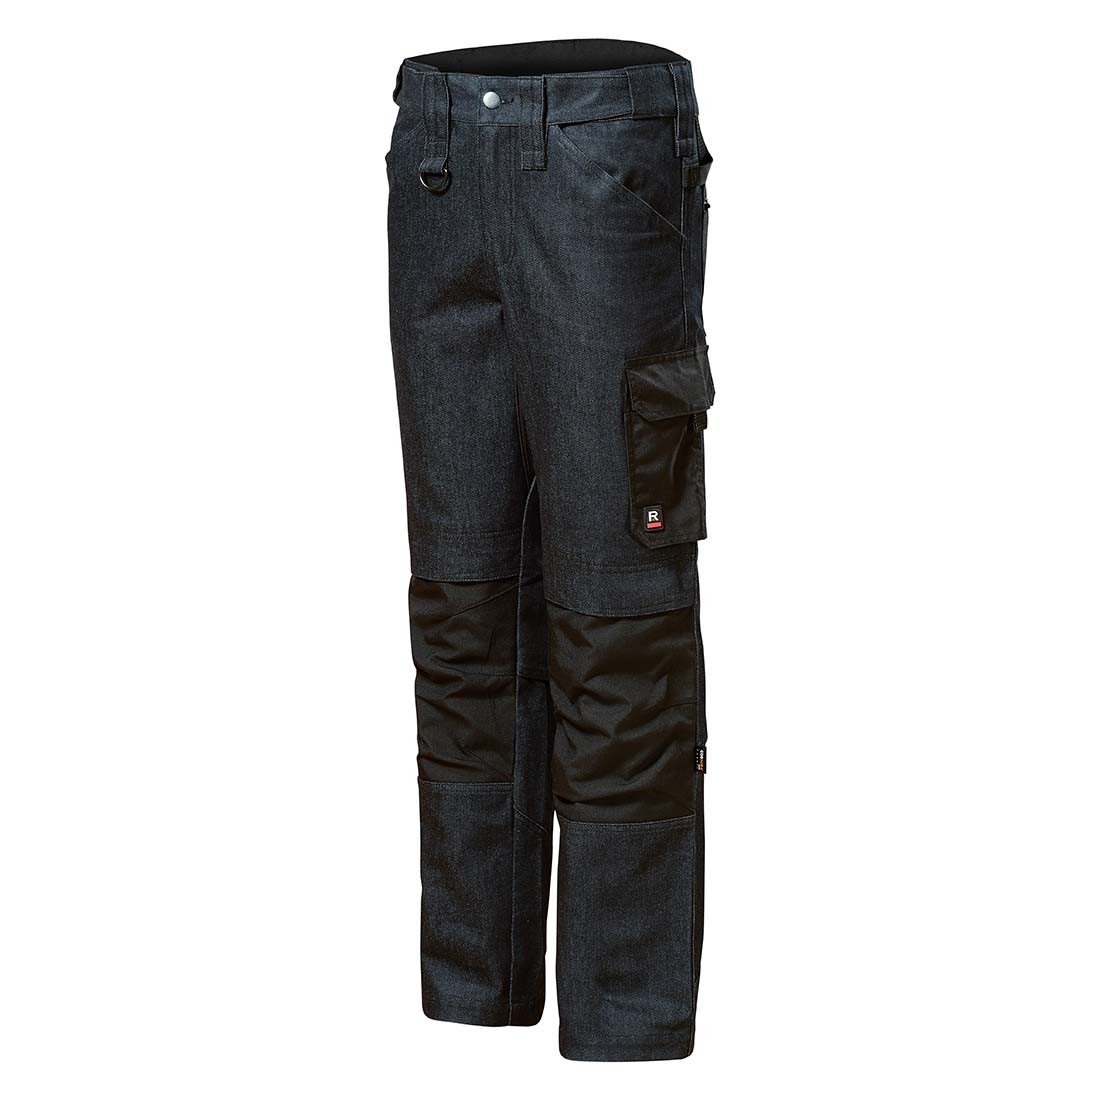 VERTEX Work jeans men’s - Safetywear